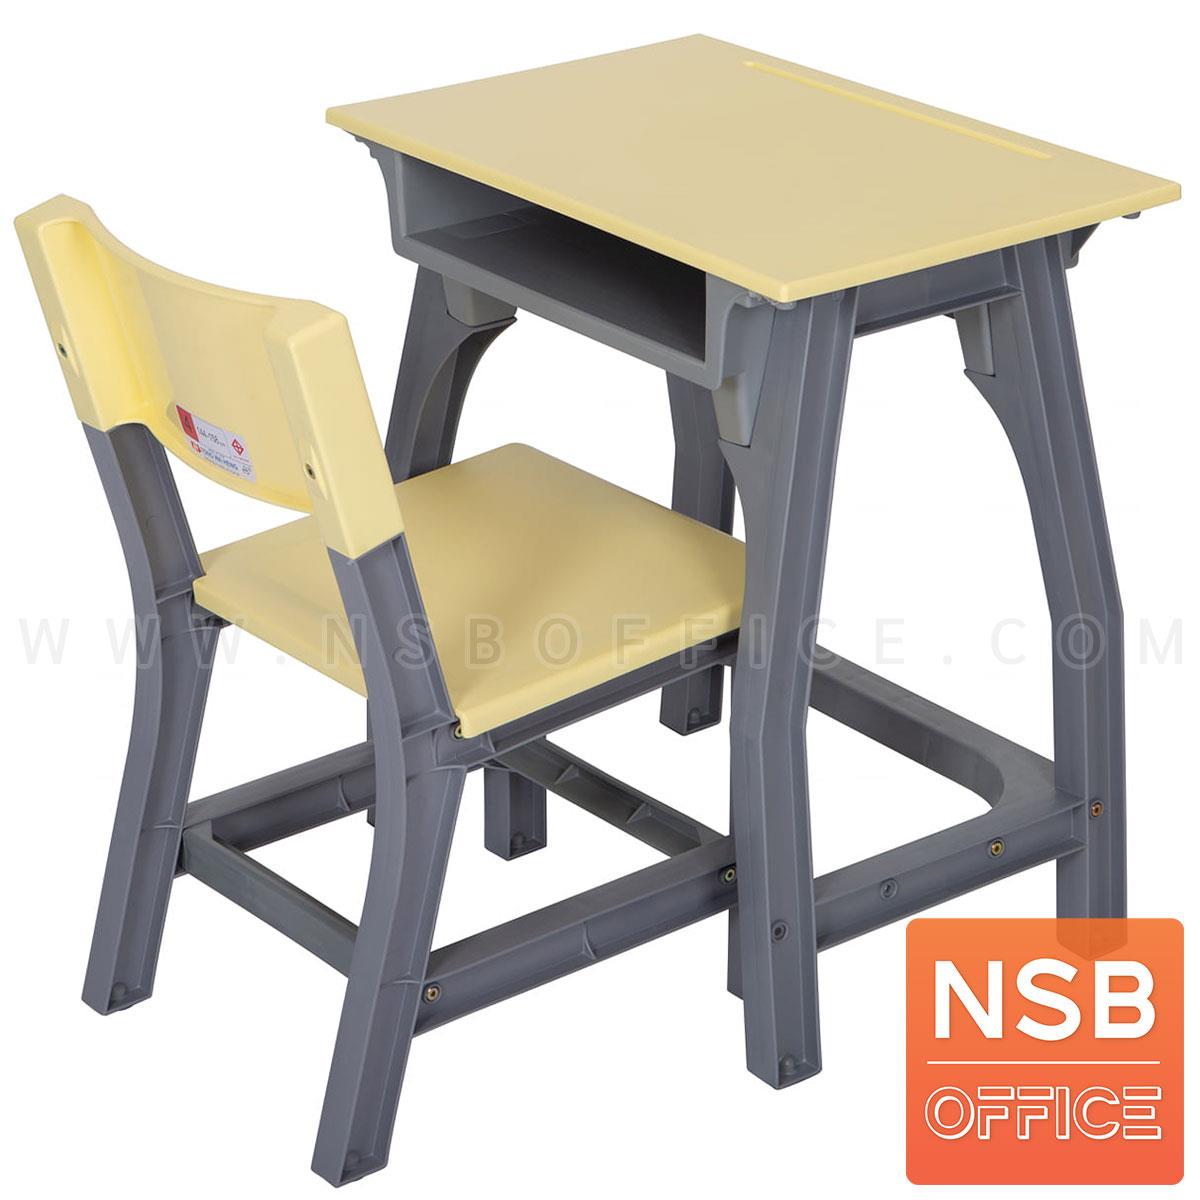 A17A037:ชุดโต๊ะและเก้าอี้นักเรียน รุ่น Ambress (แอมเบสซ์)  ระดับชั้นประถม ขาพลาสติก